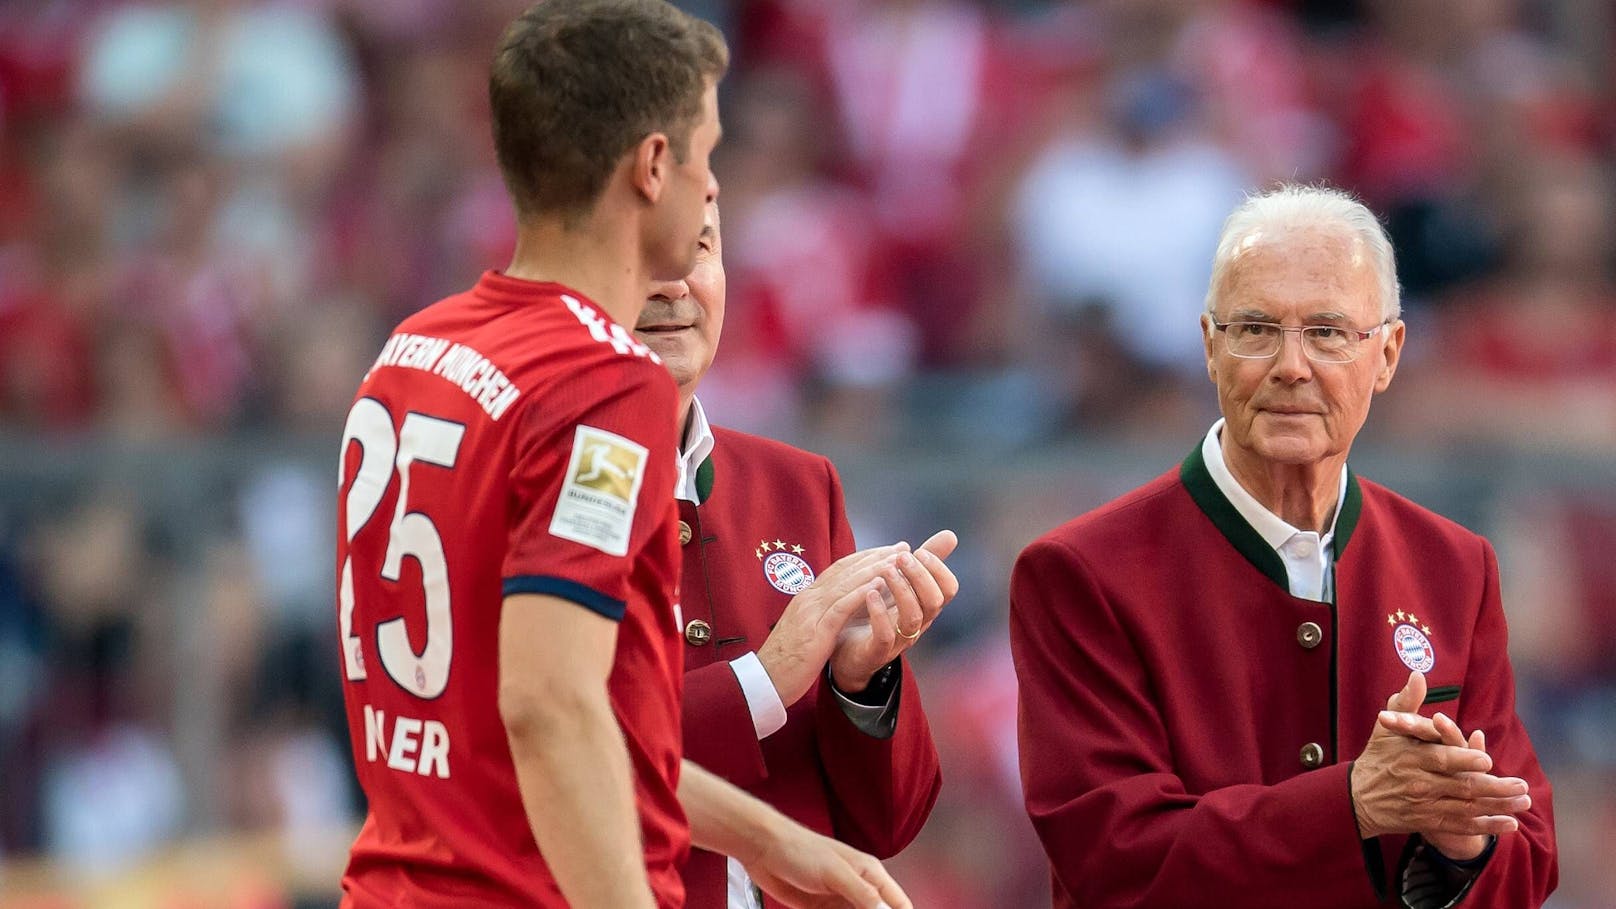 "Kaiser" tot – so trauert die Sportwelt um Beckenbauer